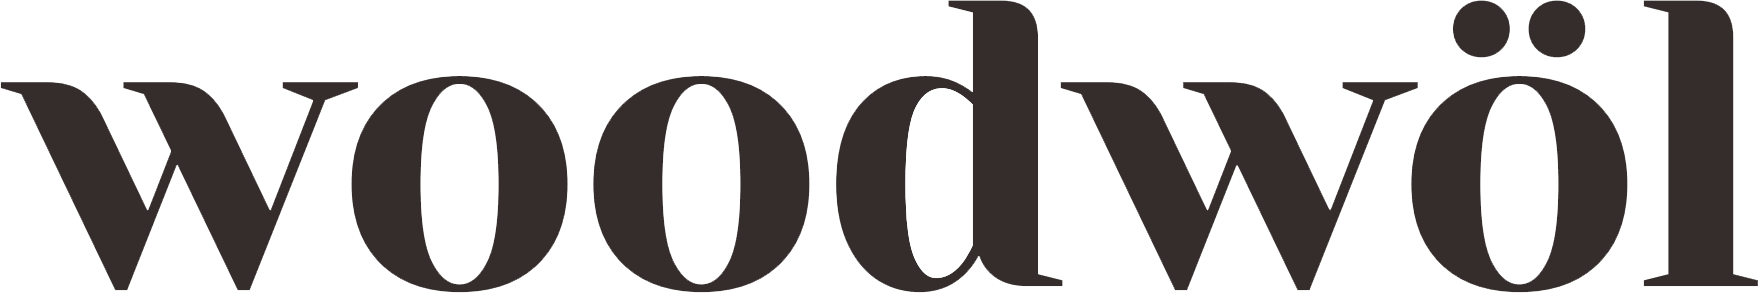 woodwol logo.png